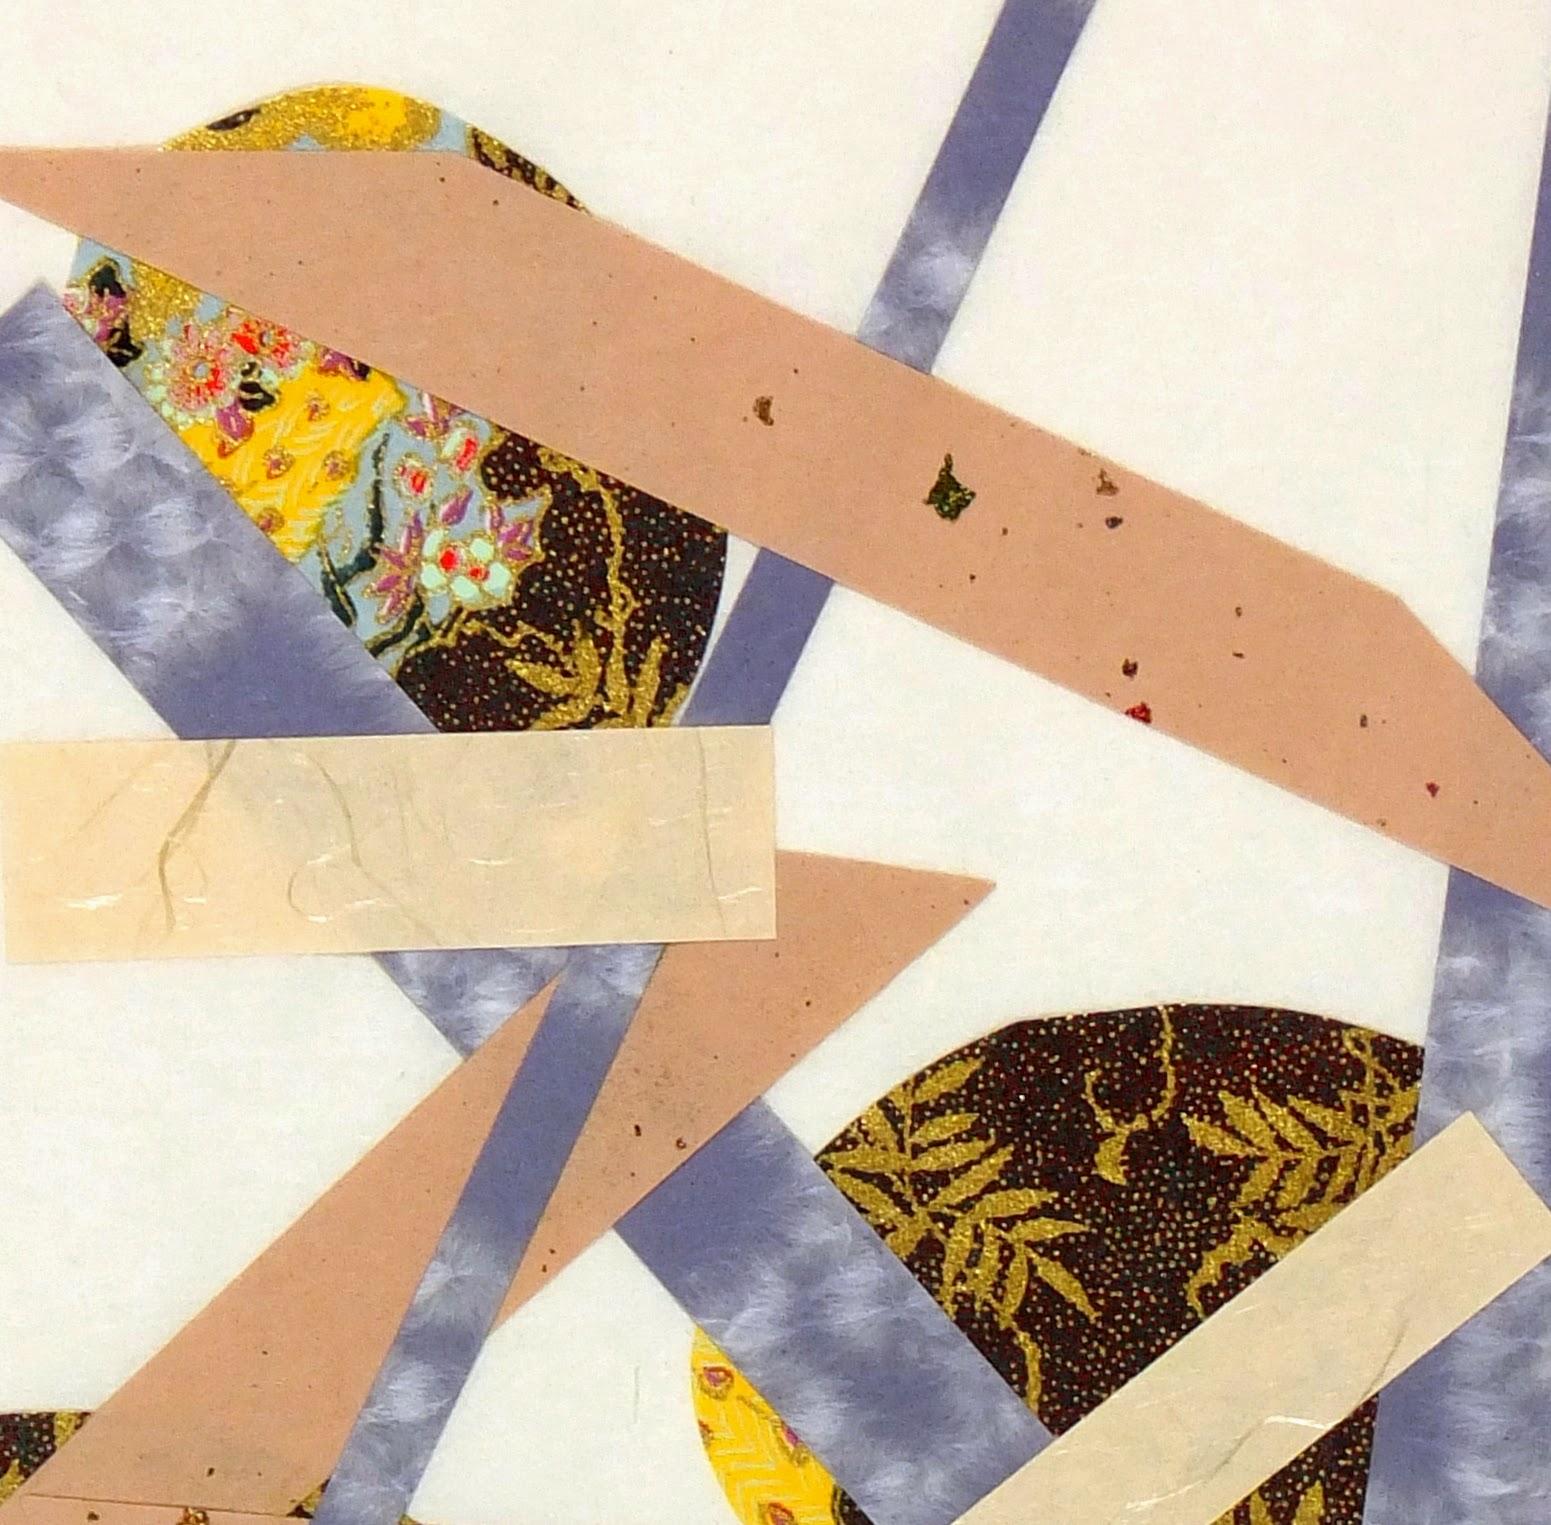 Collage moderne abstrait de longues formes géométriques en bleu, brun et beige, par l'artiste Spe, années 2000. Signé. Présenté dans un passe-partout blanc avec une bordure dorée, il convient à un cadre de taille standard. Pochette plastique